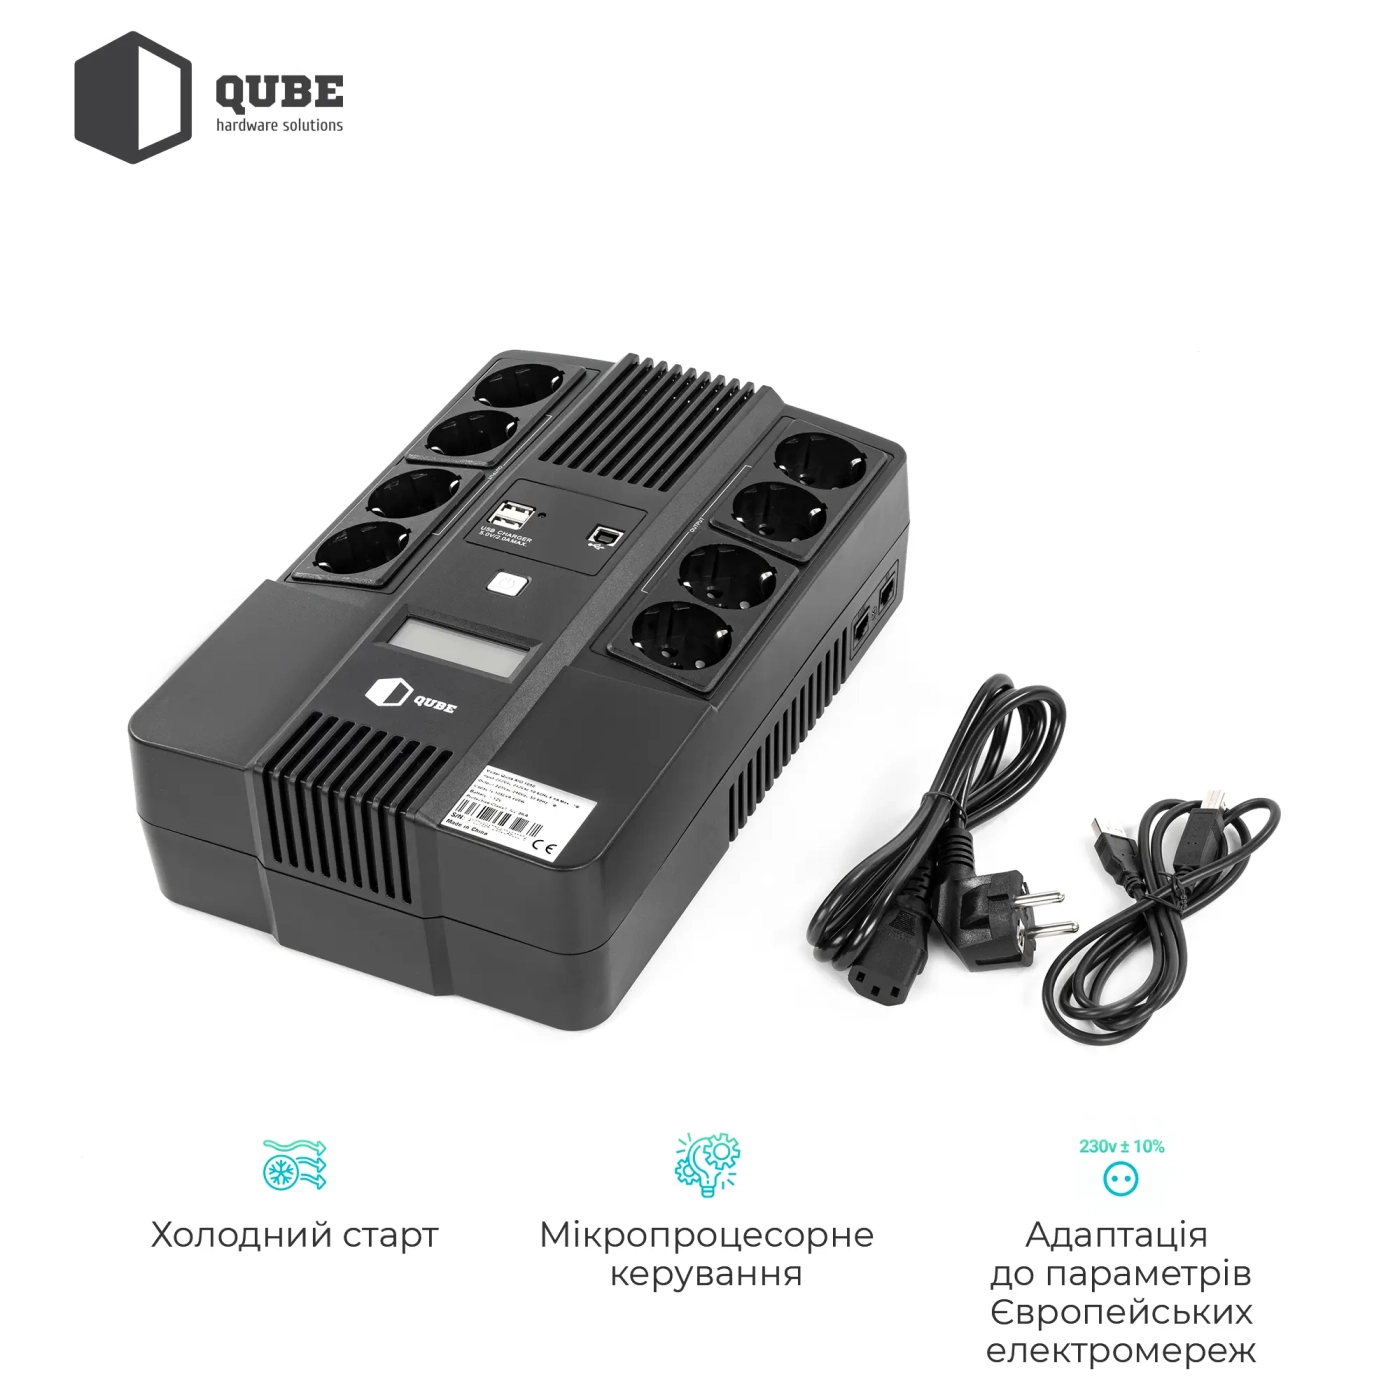 Купить ИБП (UPS) линейно-интерактивный Qube AIO 1050, 1050VA/600W, LCD, 8 x Schuko, RJ-45, USB - фото 4